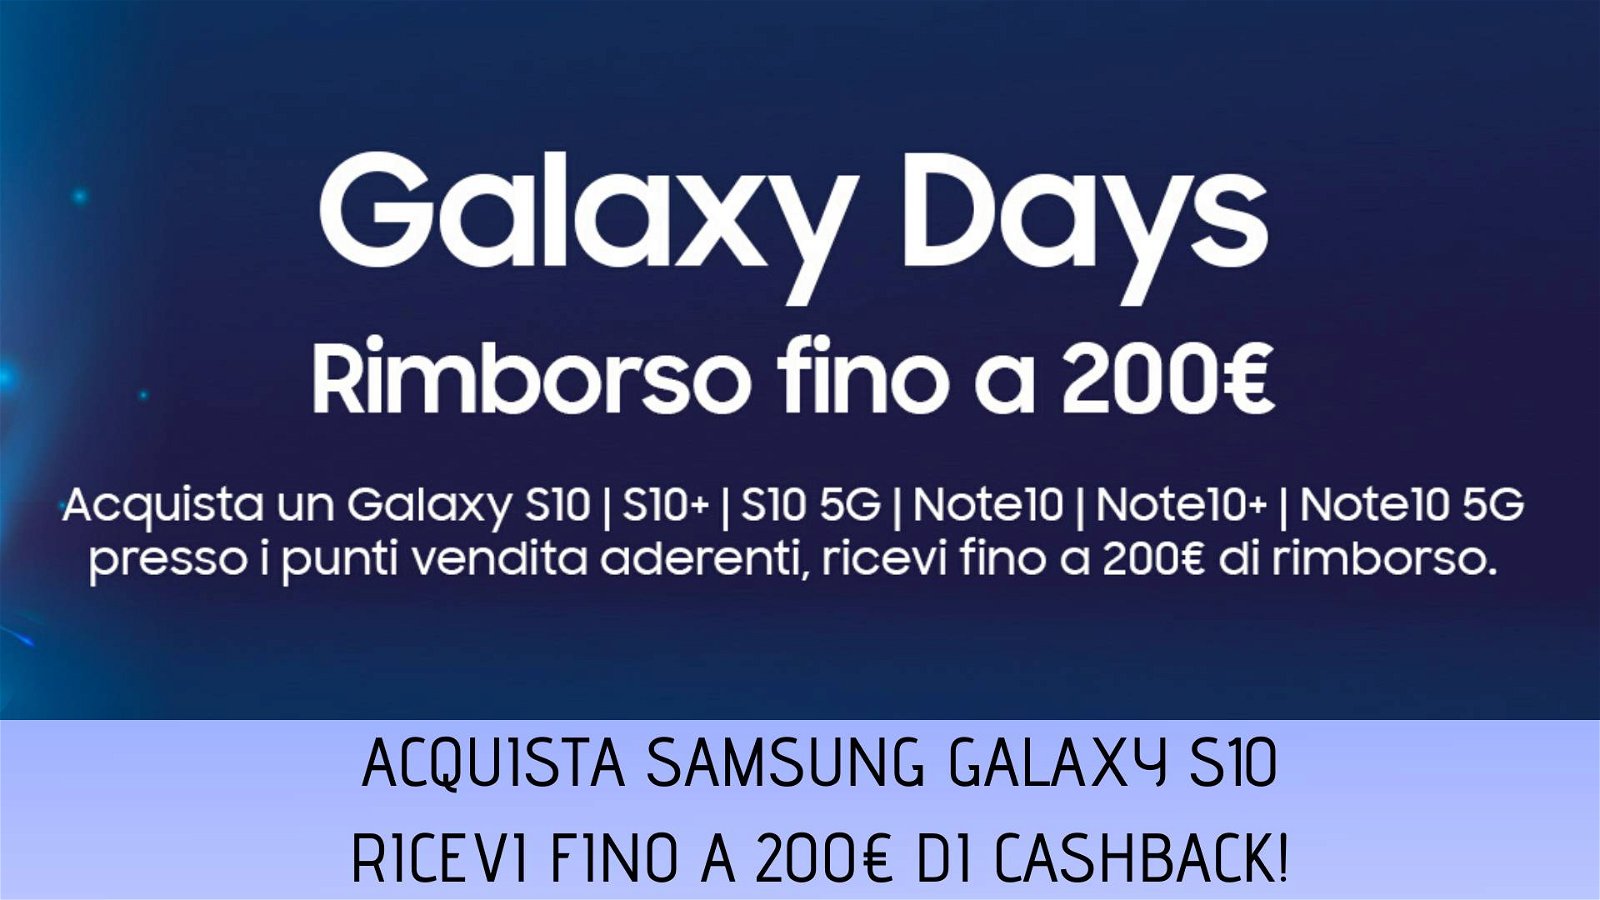 Immagine di Samsung Galaxy Days: fino a 200€ di cashback acquistando la linea S10 o Note 10!